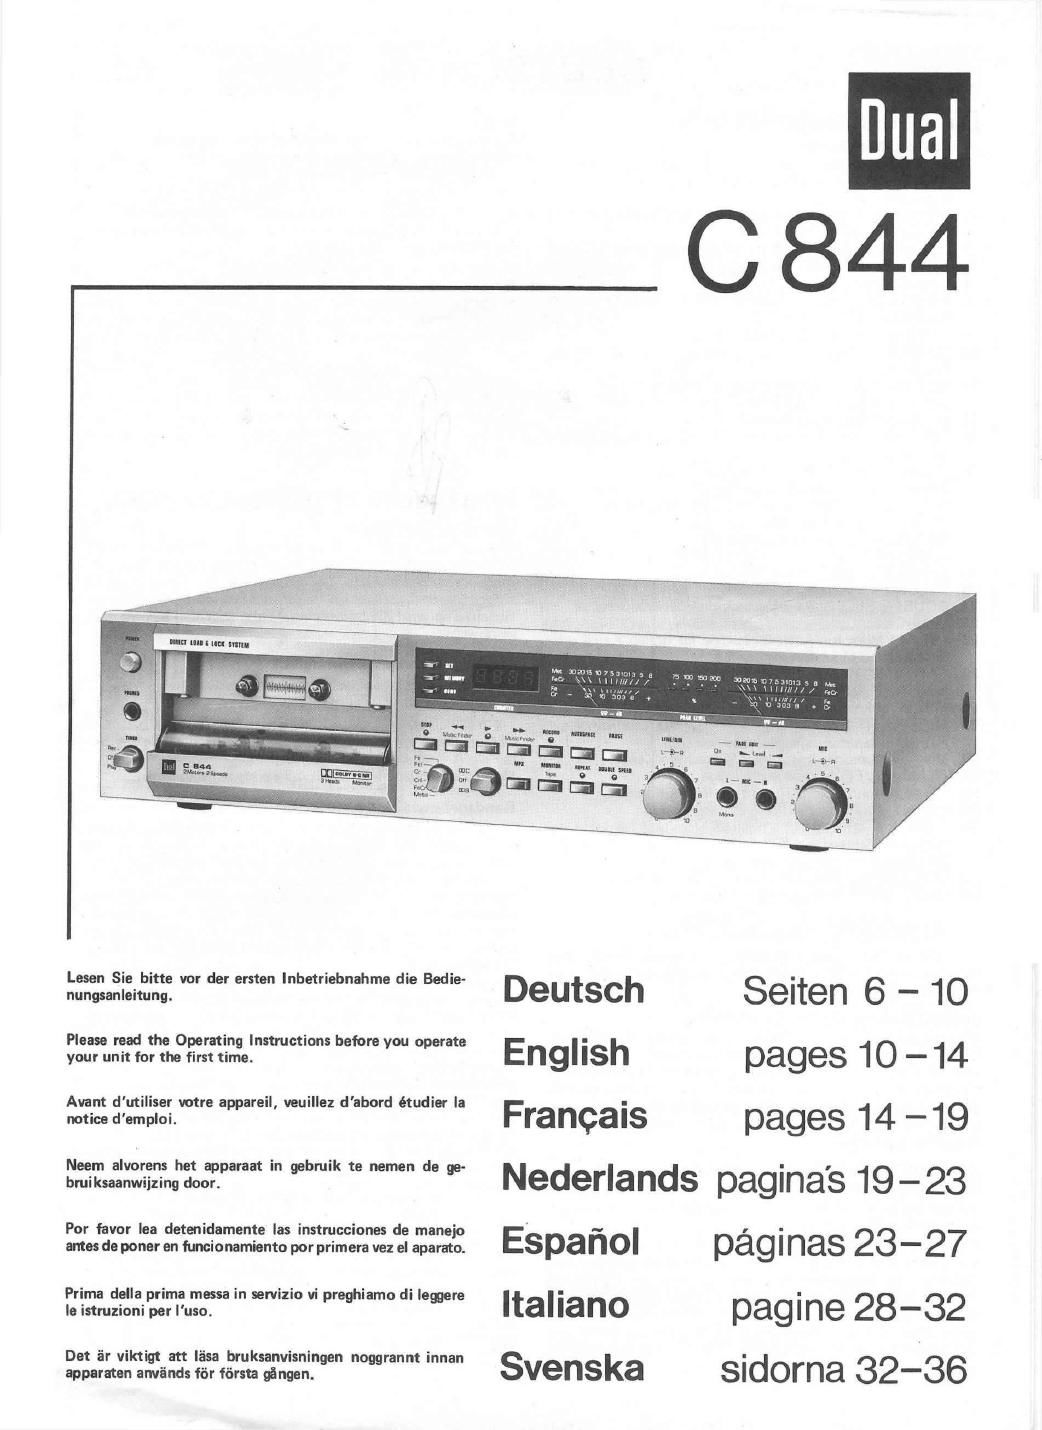 Dual C 844 Owners Manual